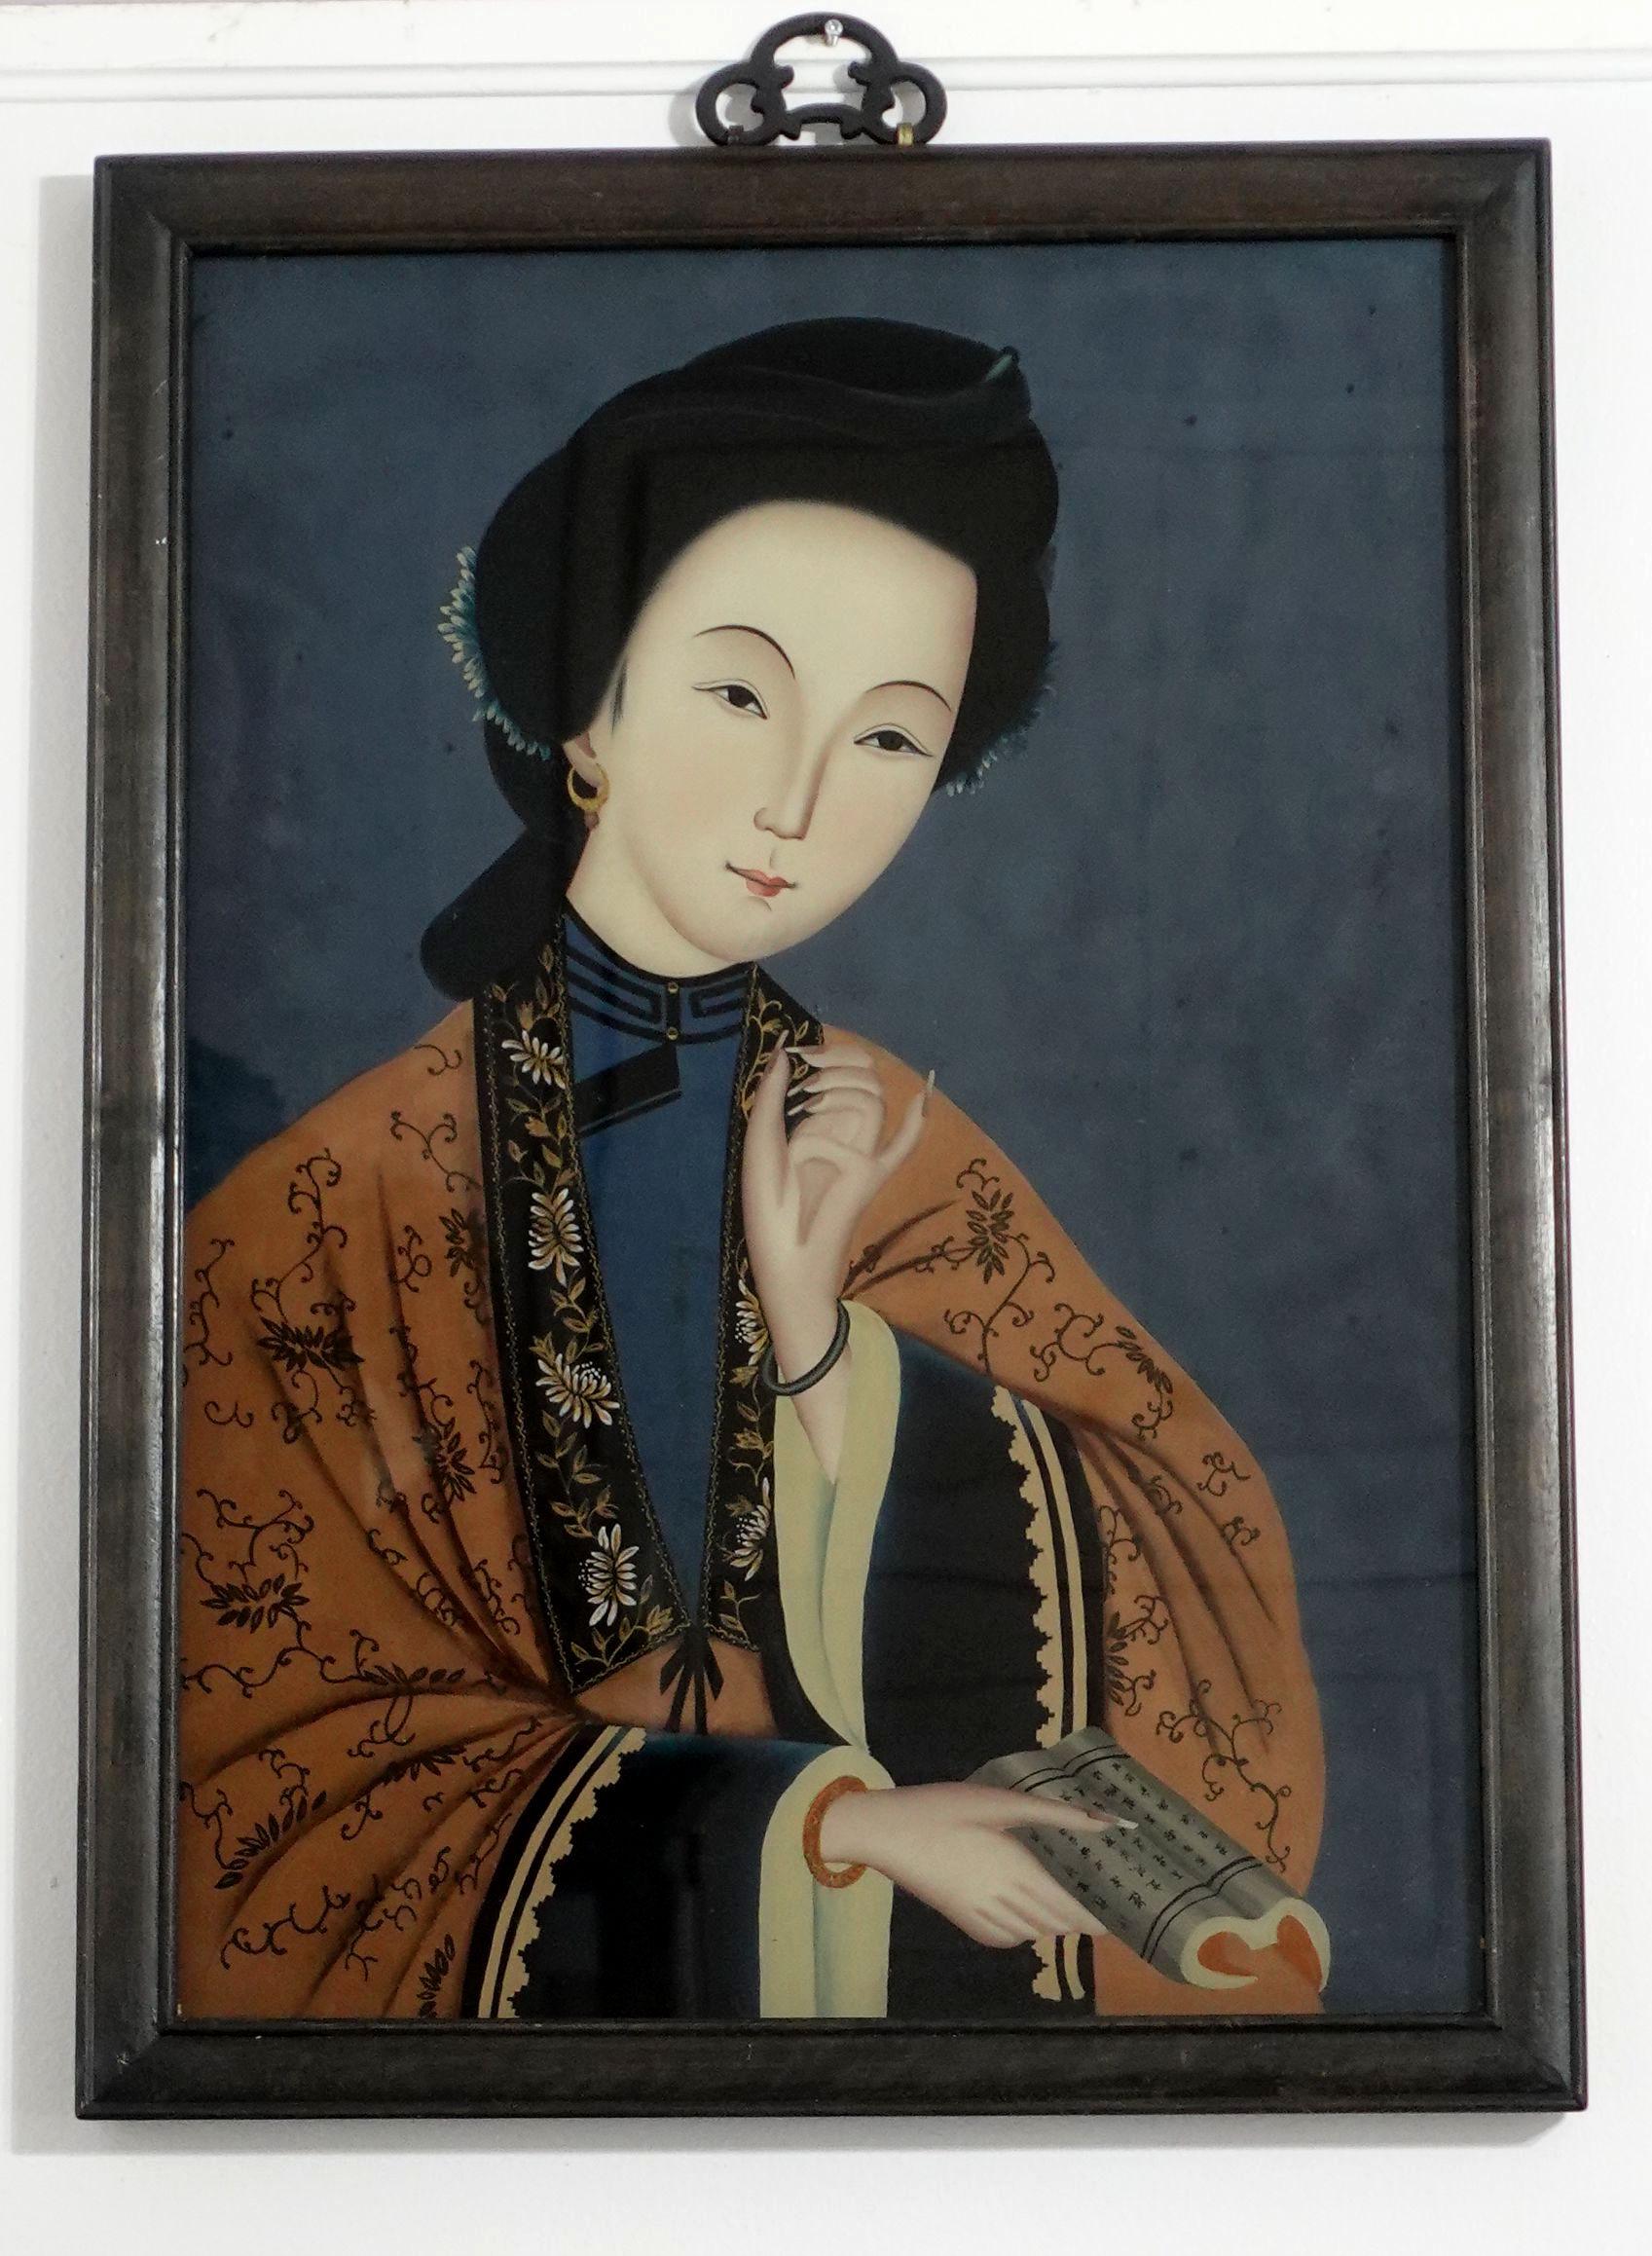 Grande et charmante peinture d'exportation chinoise du XIXe siècle en verre inversé, représentant la beauté des coutumes chinoises traditionnelles et les décorations vestimentaires des femmes de la noblesse. Les tableaux sont livrés avec leur cadre